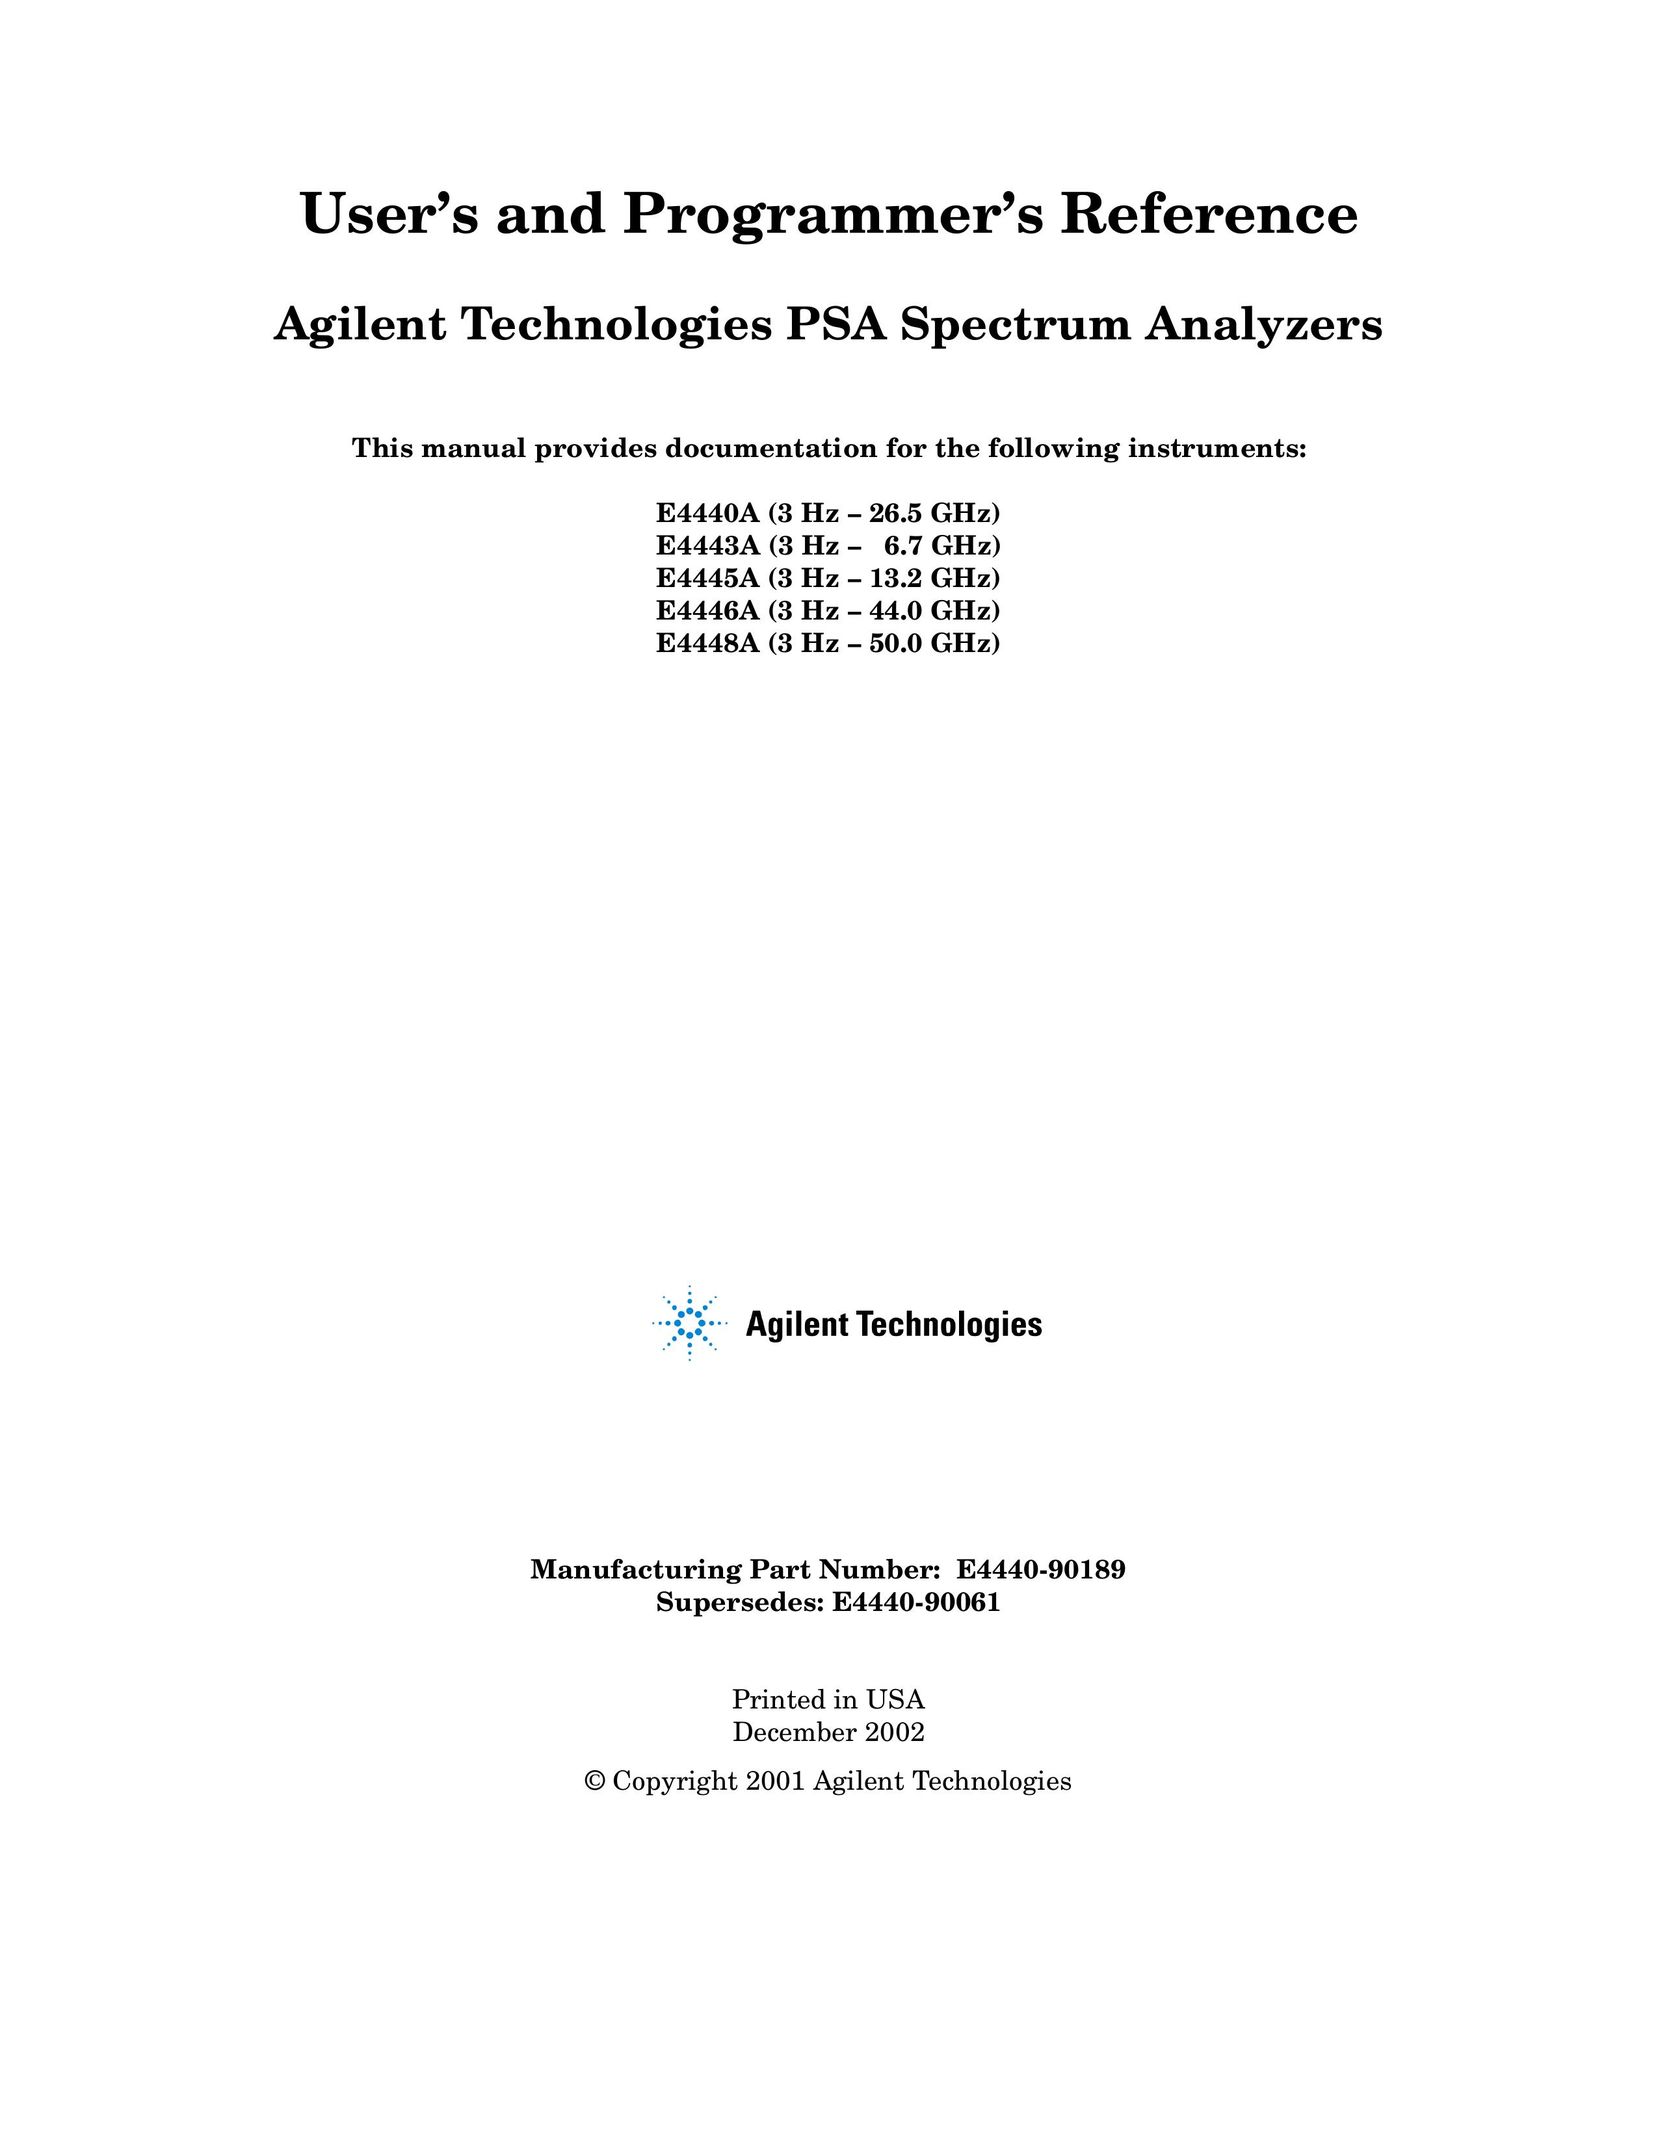 Agilent Technologies E4446A Saw User Manual